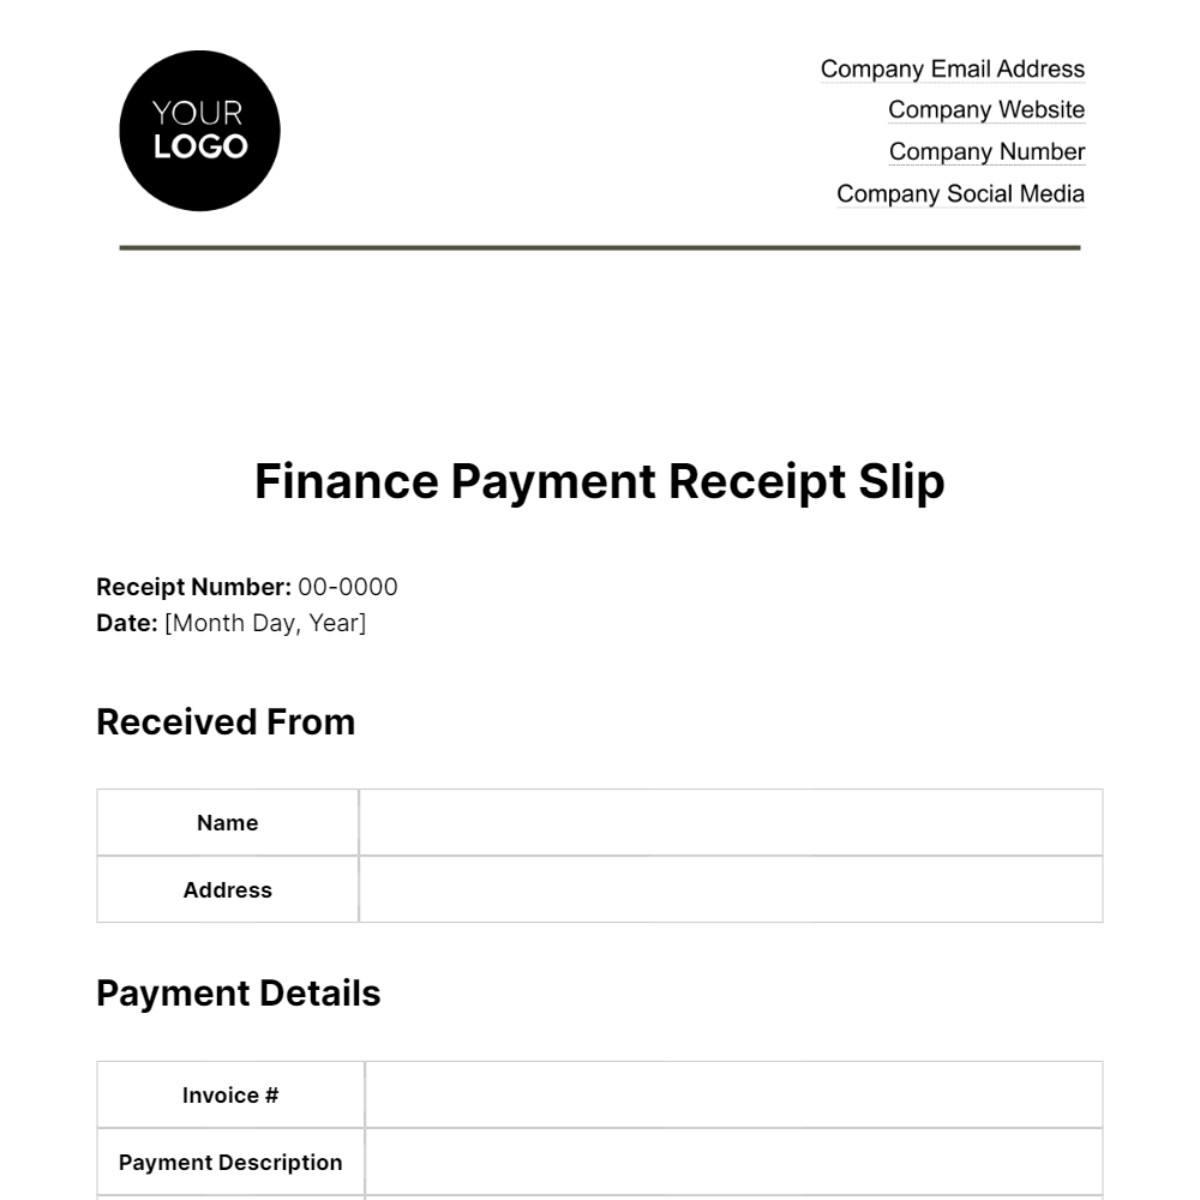 Finance Payment Receipt Slip Template